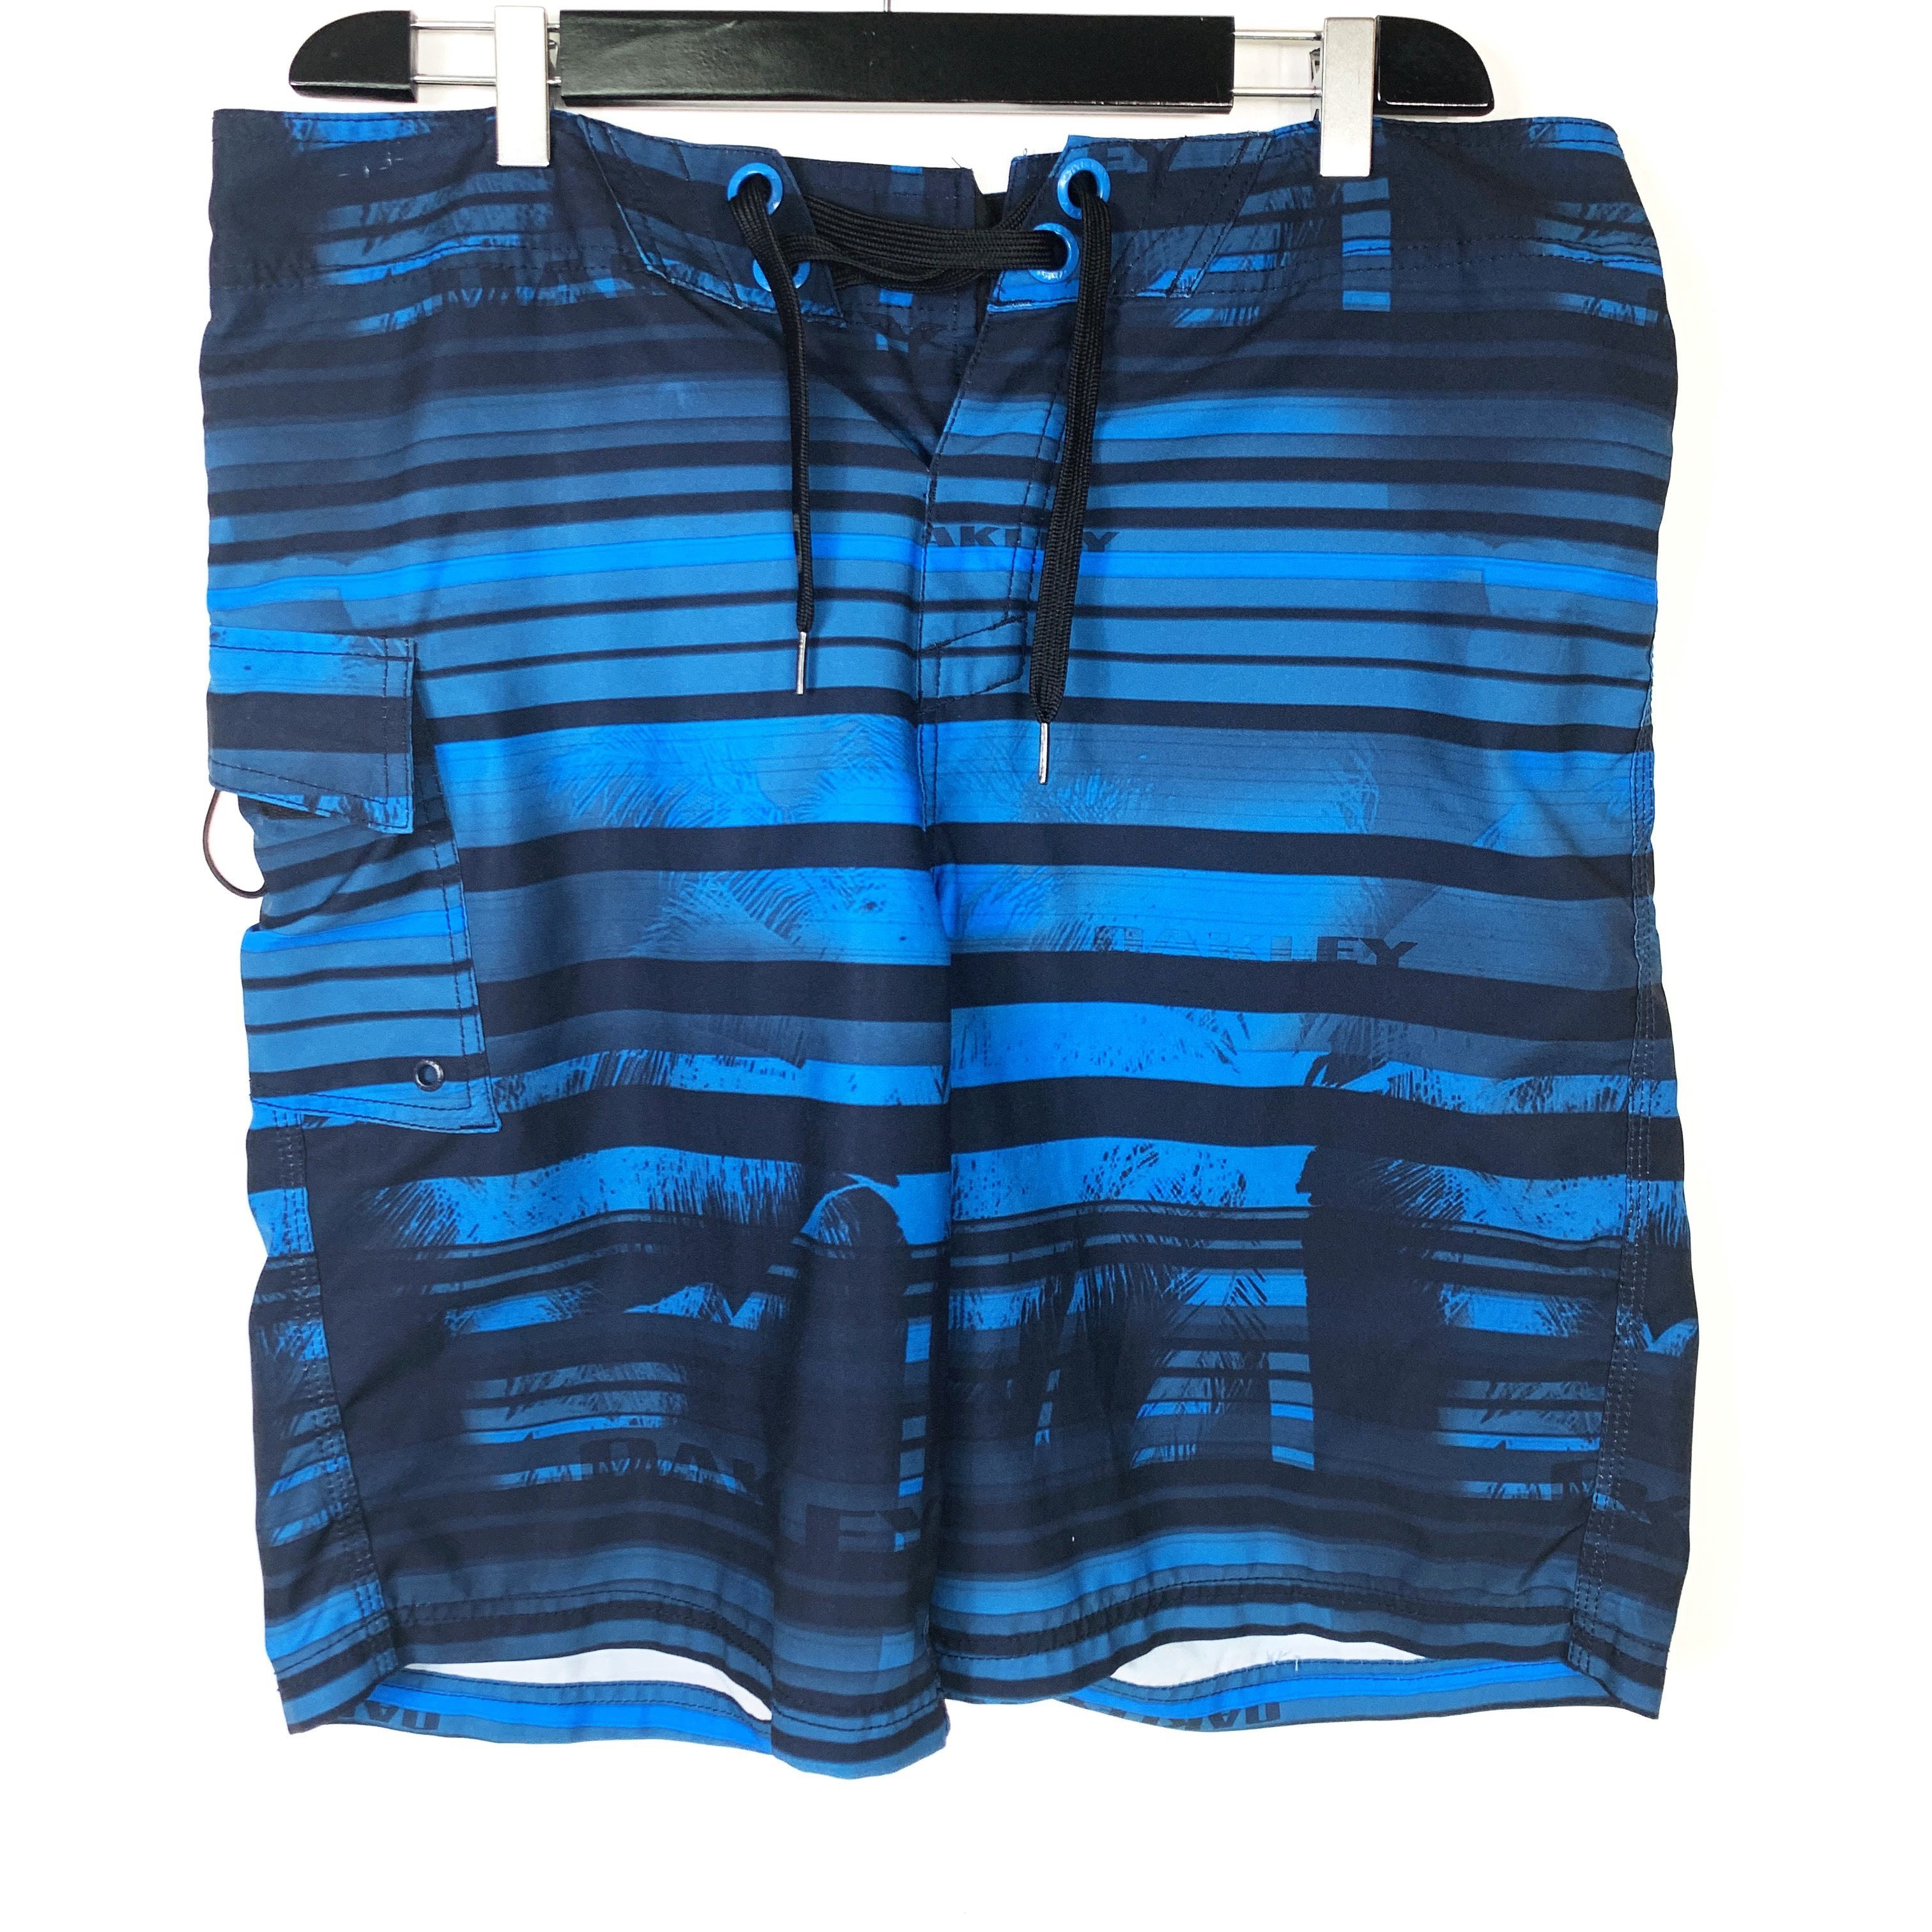 Oakley Oakley Striped Surf Board Shorts Swim Trunks 36 Size US 36 / EU 52 - 1 Preview